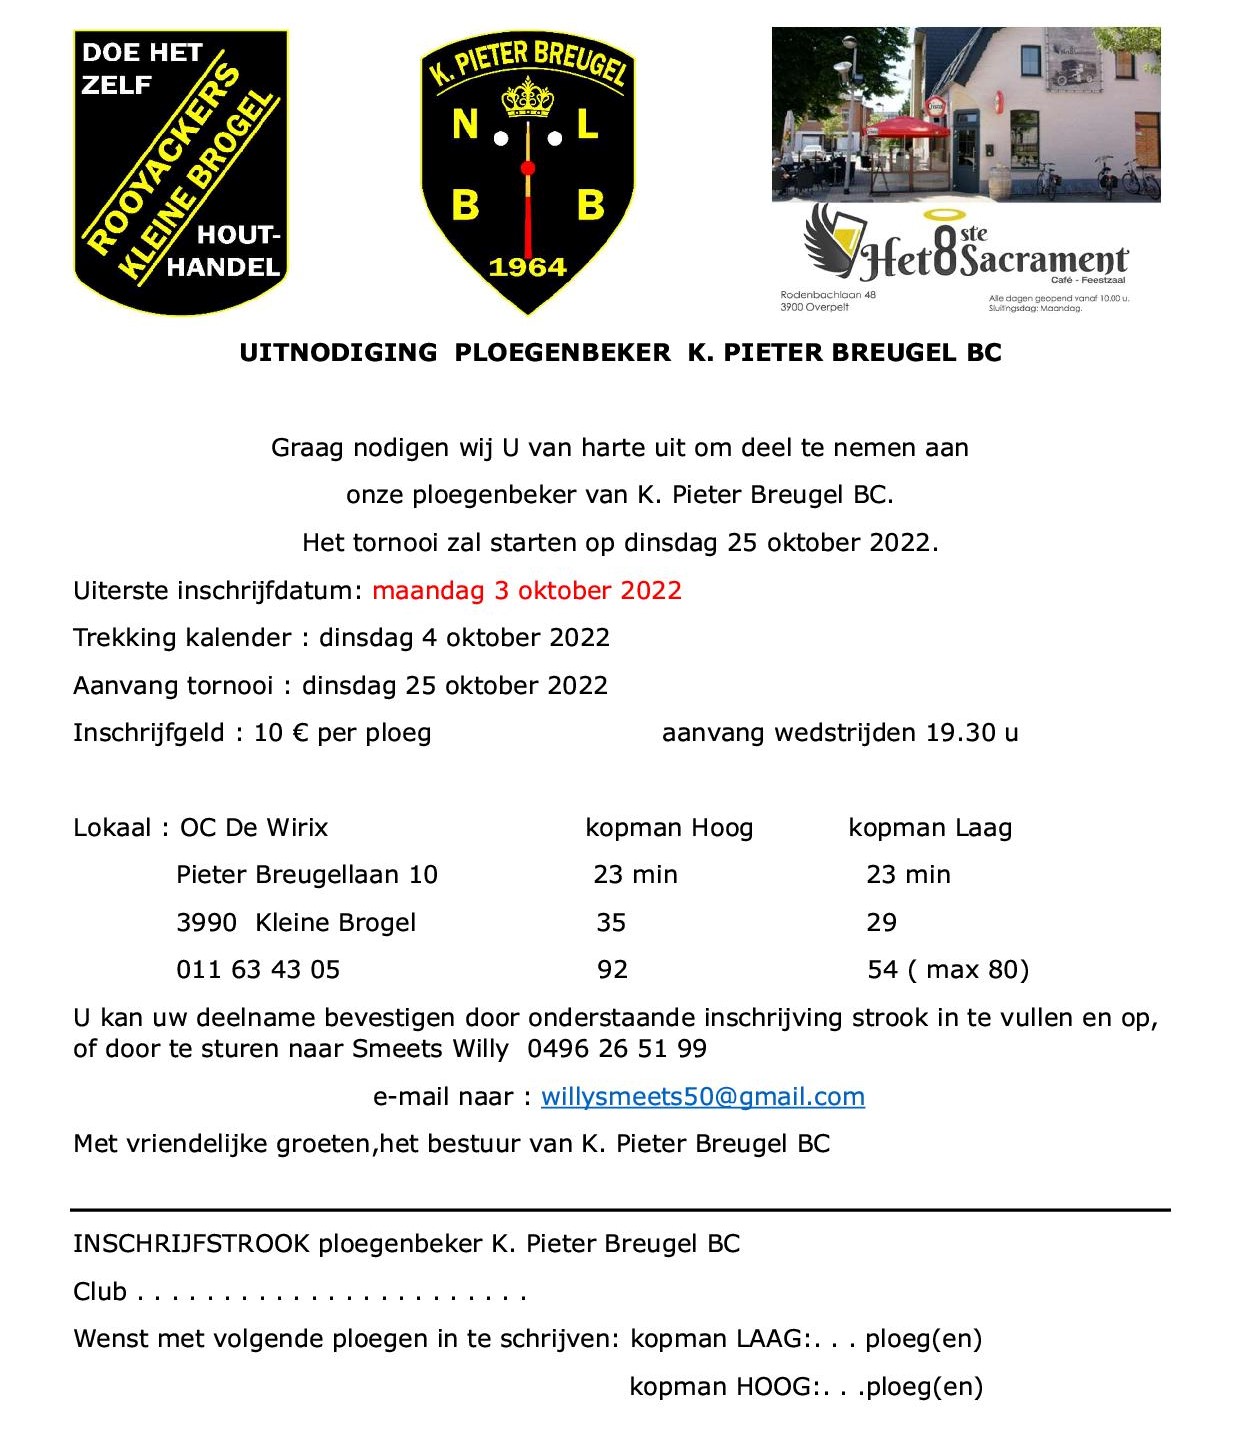 Uitnodiging PLB K Pieter Breugel BC 2022 2023